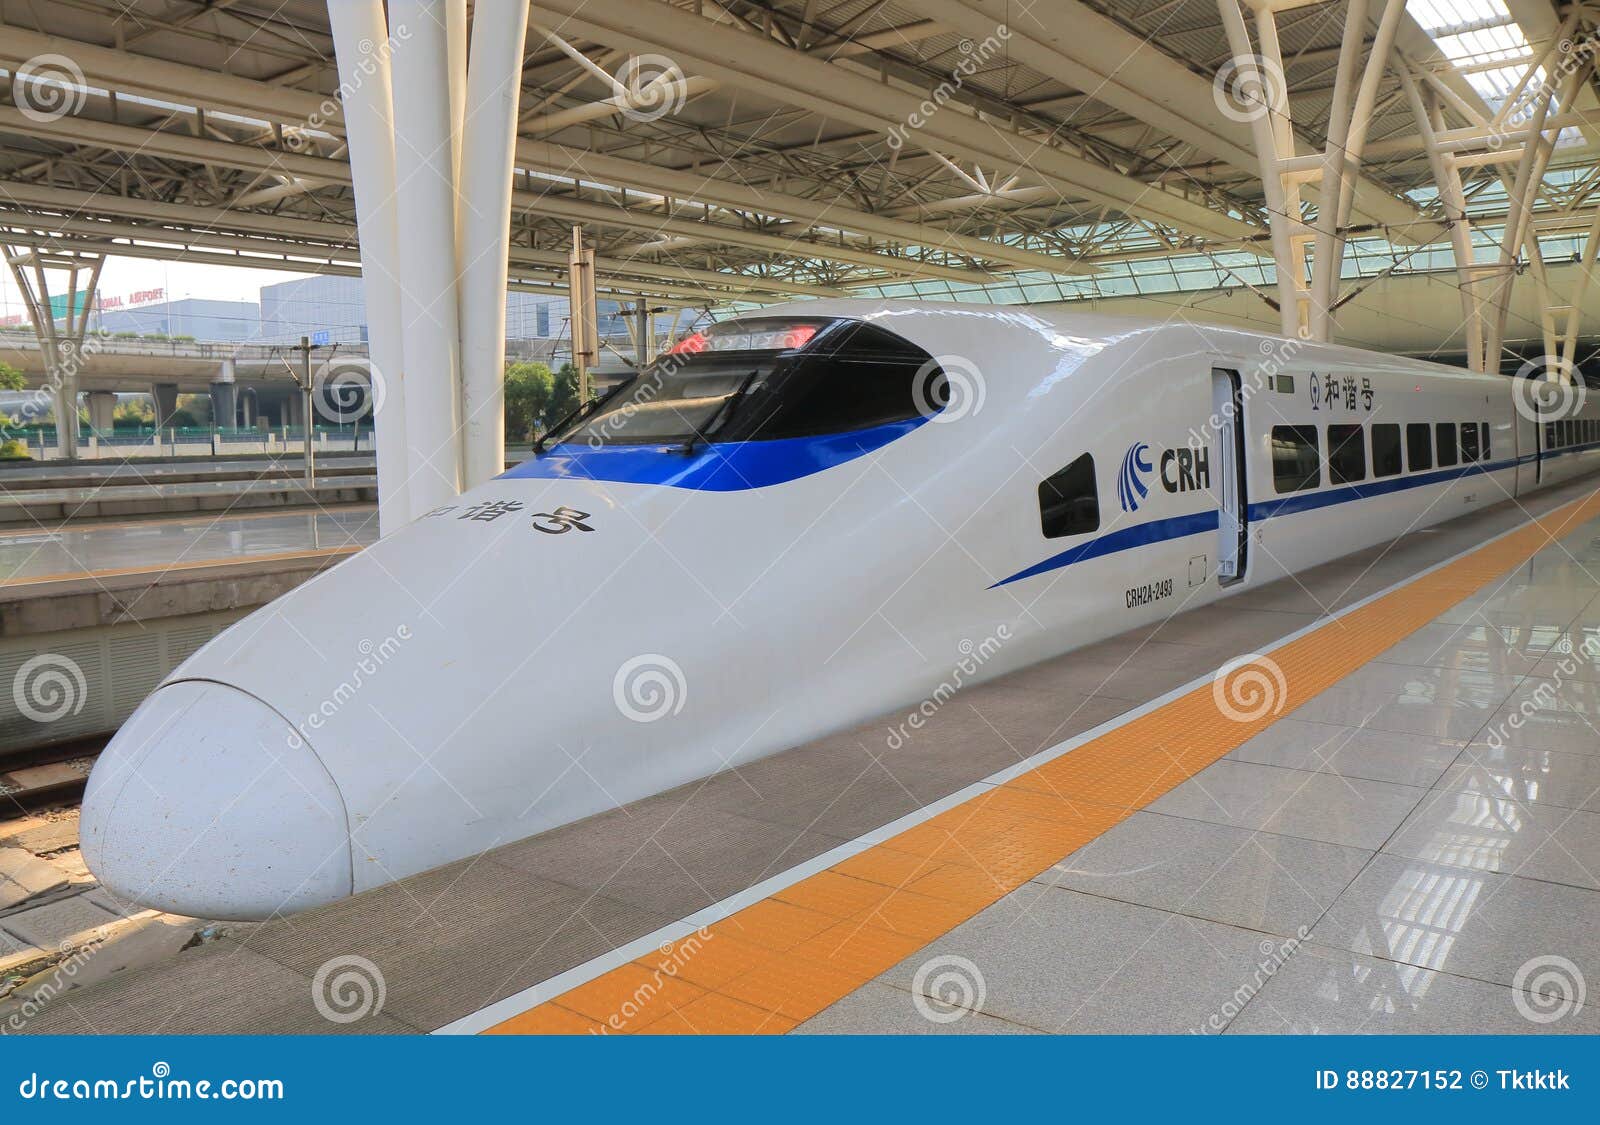 高速火车crh上海中国图库摄影片 图片包括有高速火车crh上海中国 7152